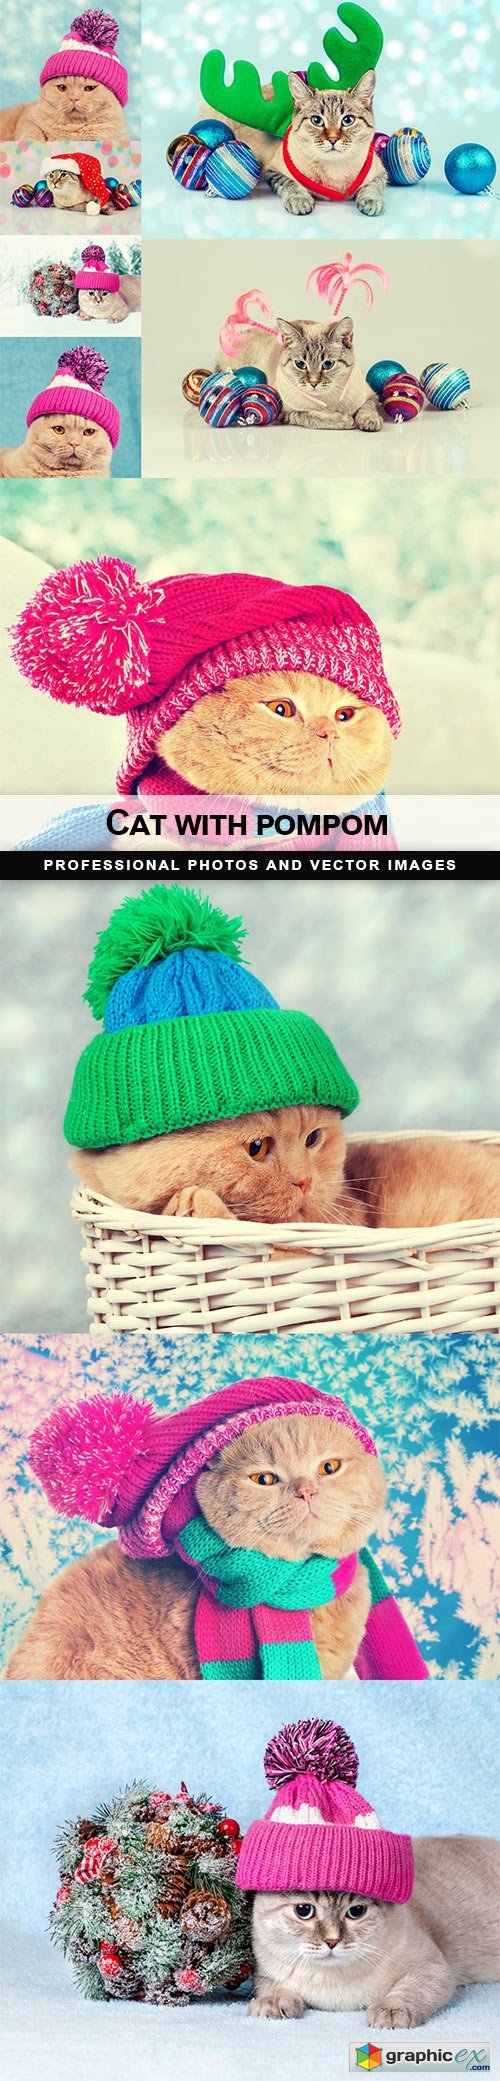 Cat with pompom